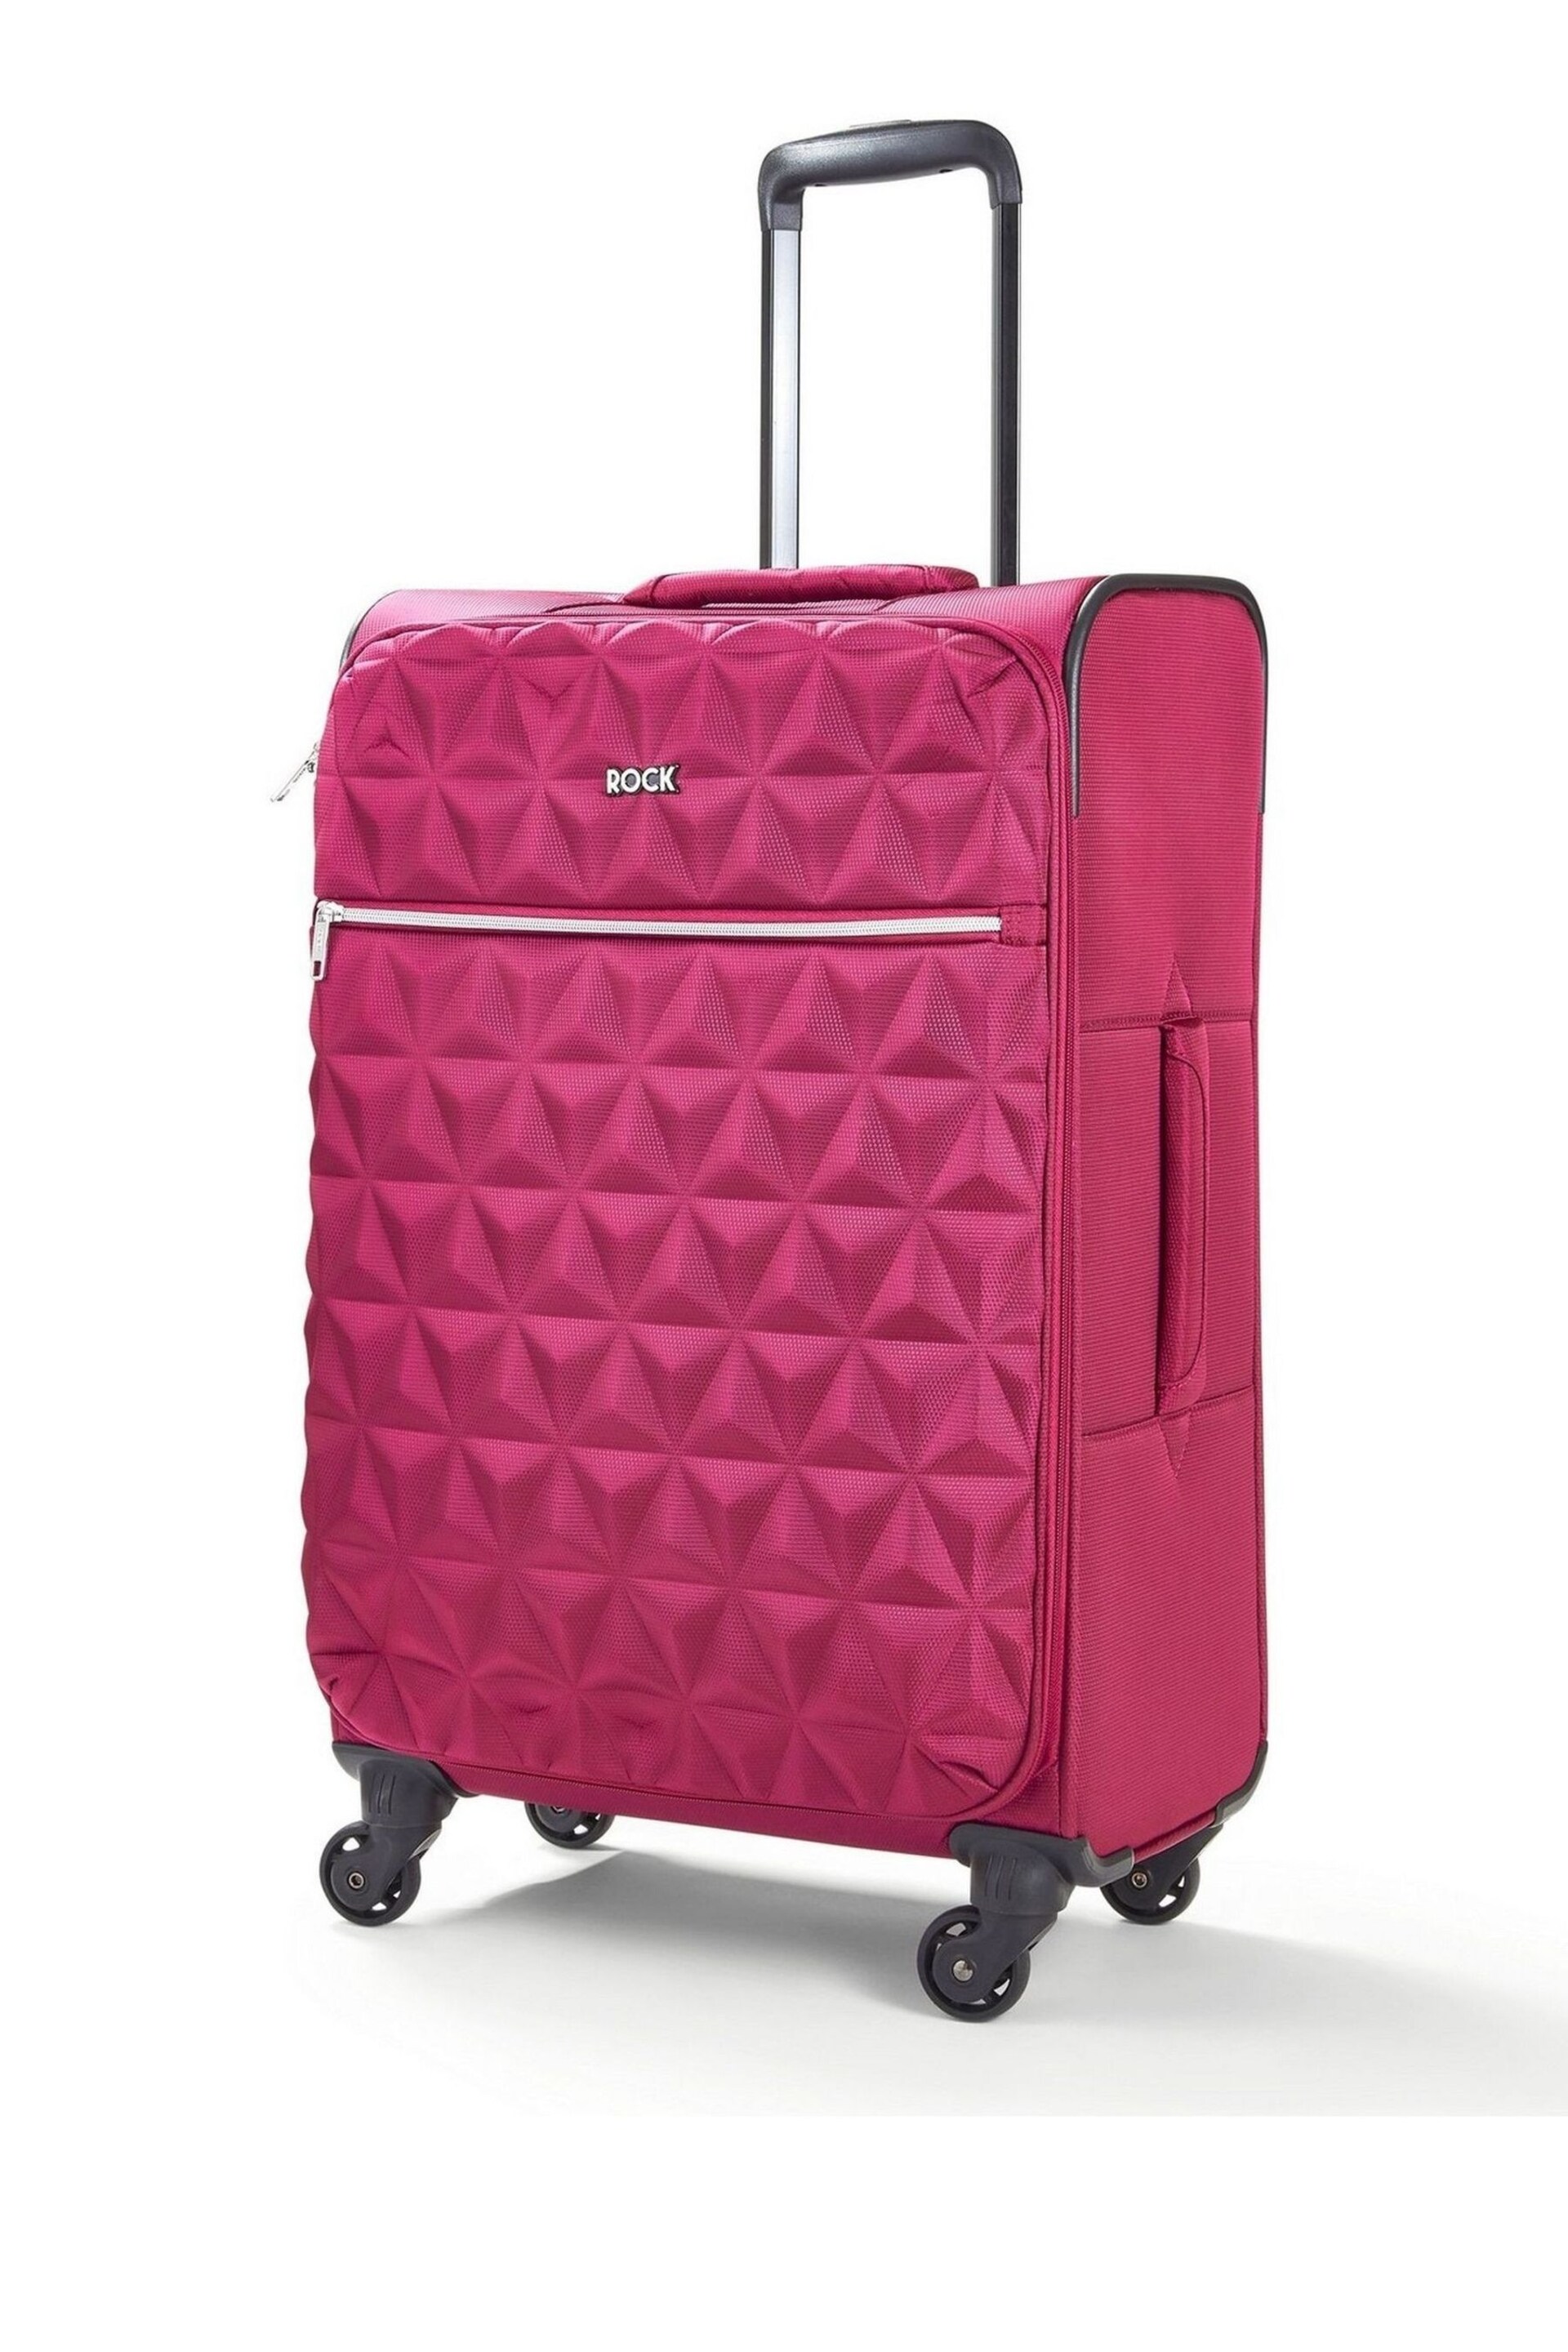 Rock Luggage Jewel Medium Suitcase - Image 1 of 1